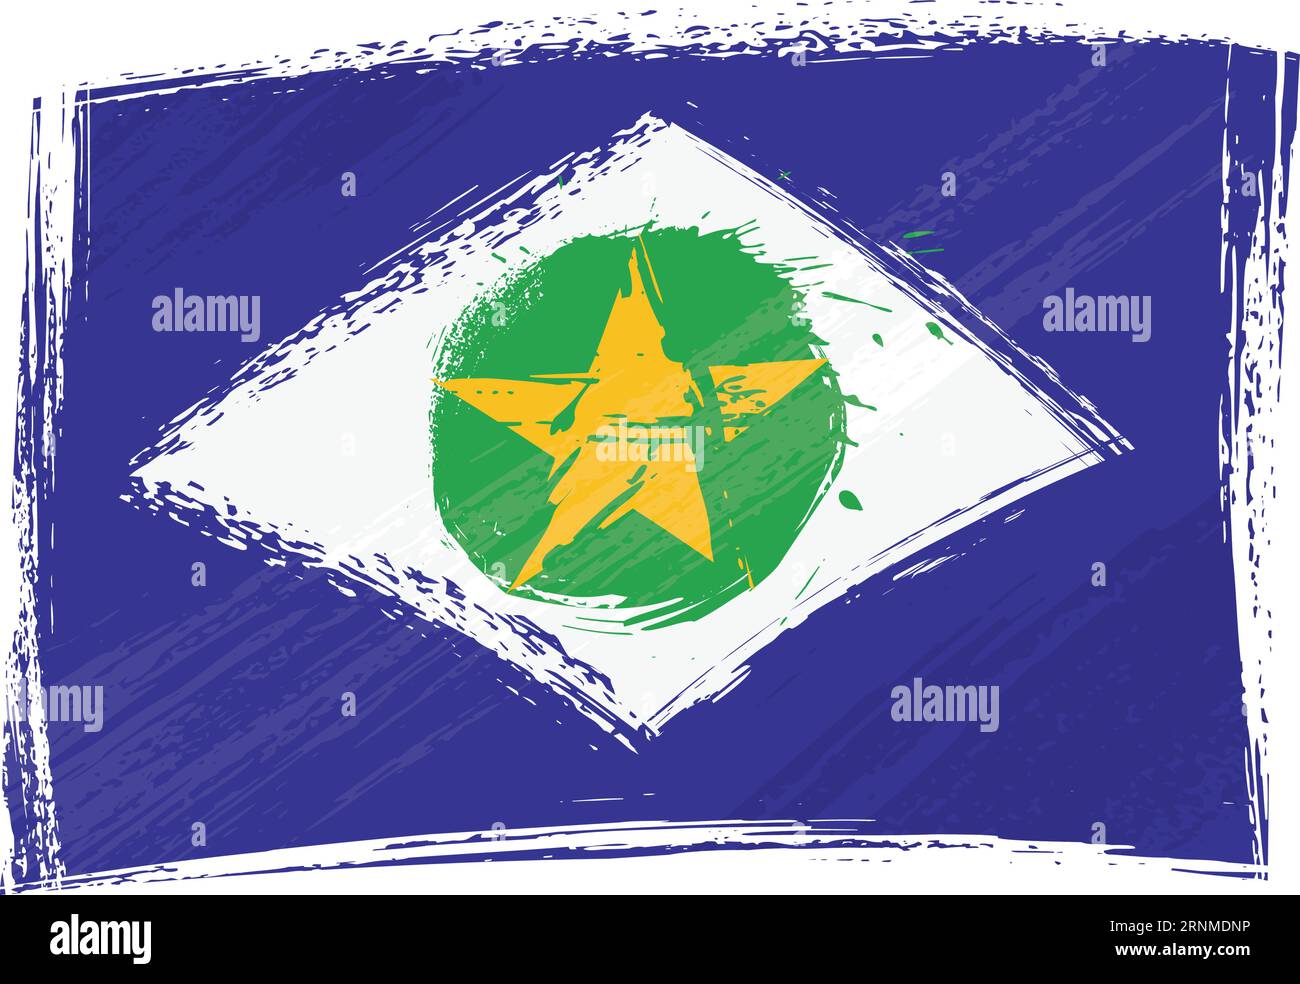 Drapeau de l'État grunge Mato Grosso Illustration de Vecteur